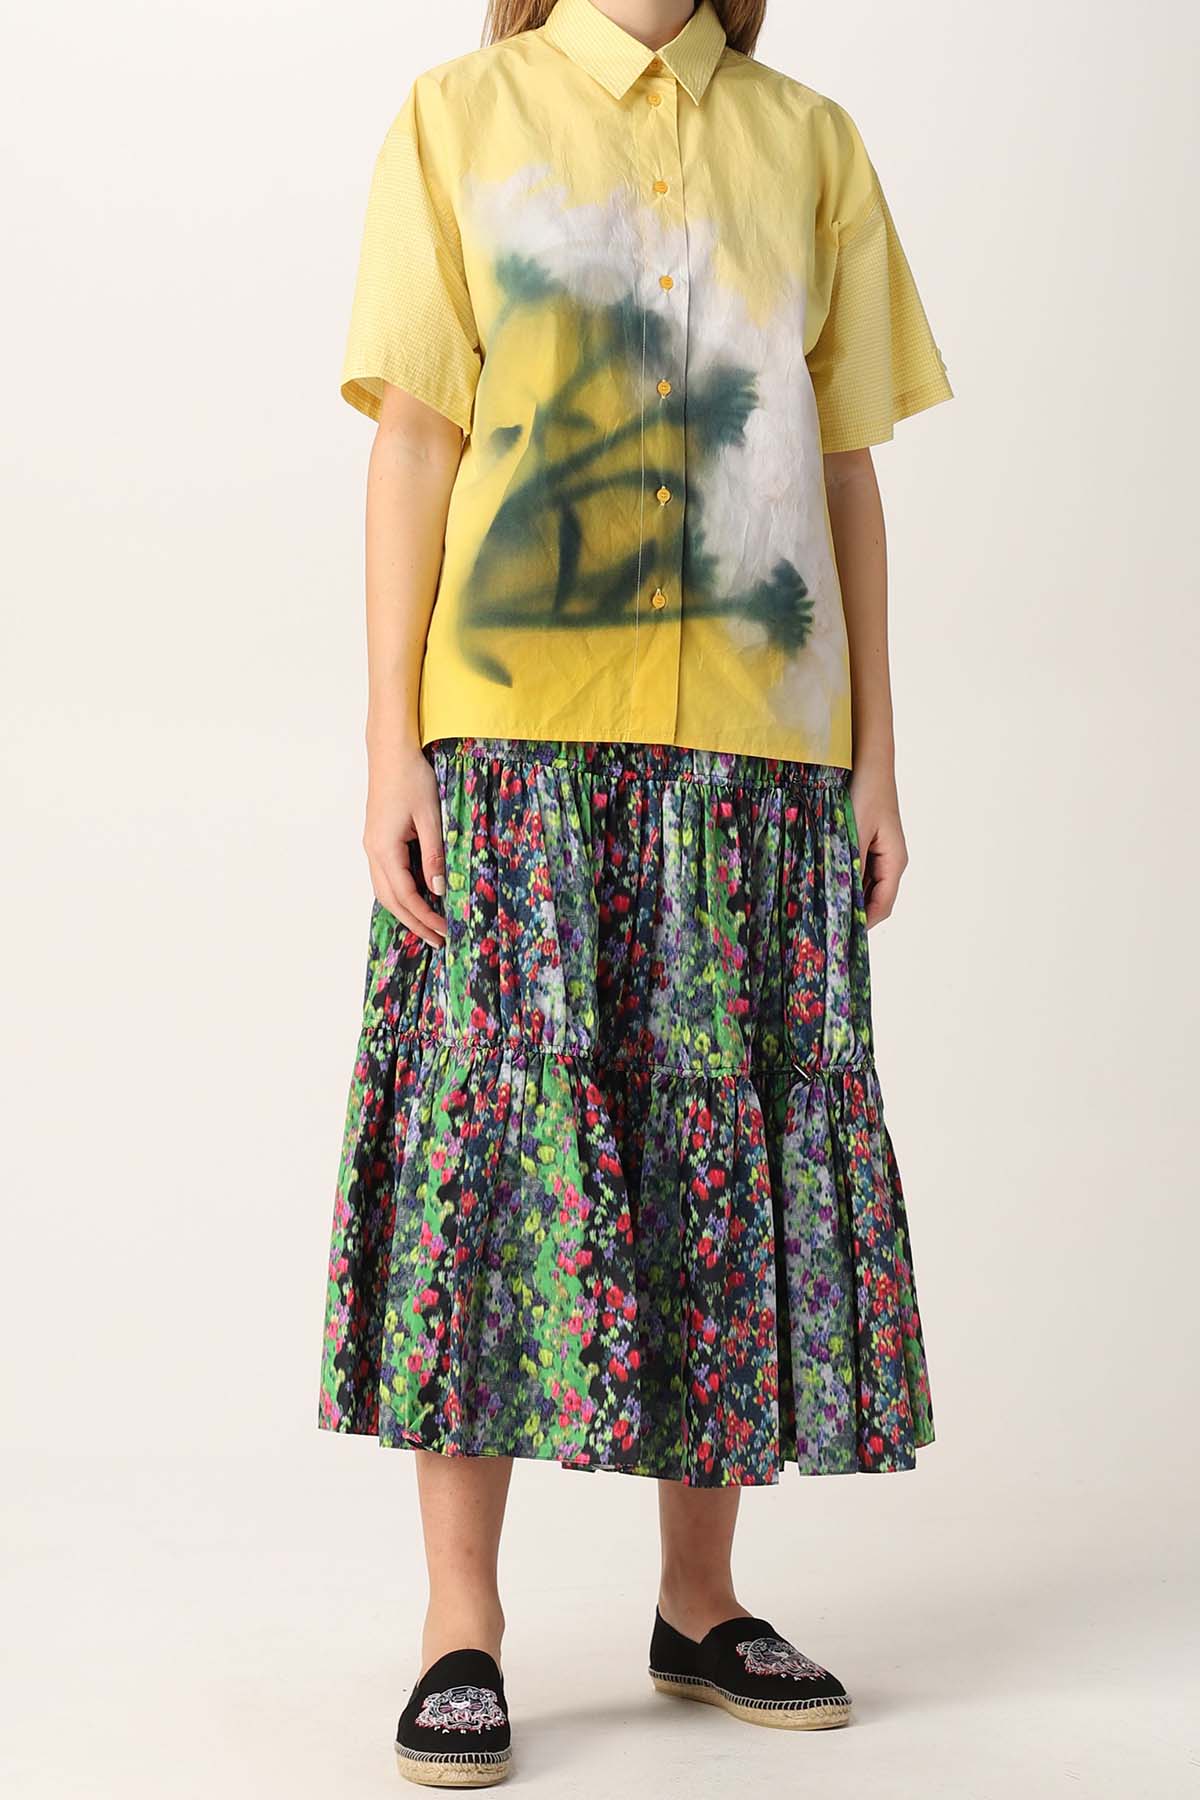 Kenzo Çiçek Desenli Büzgülü Midi Etek-Libas Trendy Fashion Store